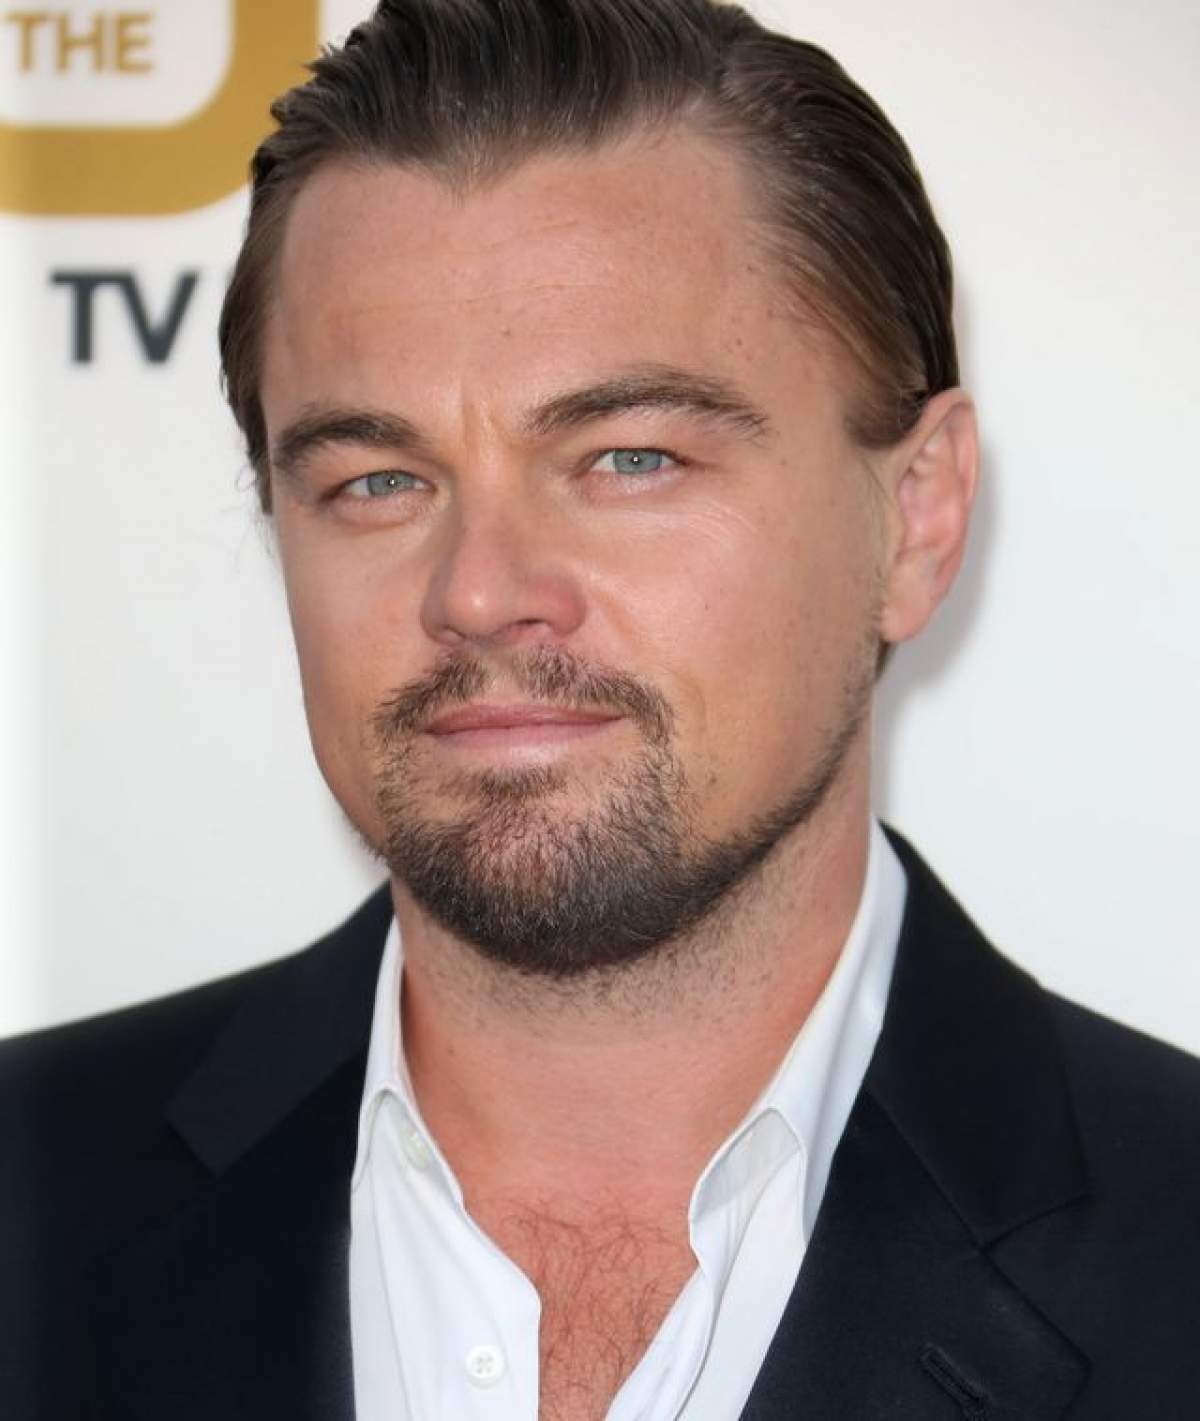 Veşti proaste pentru Leonardo DiCaprio! A fost arestat pentru posesie de droguri